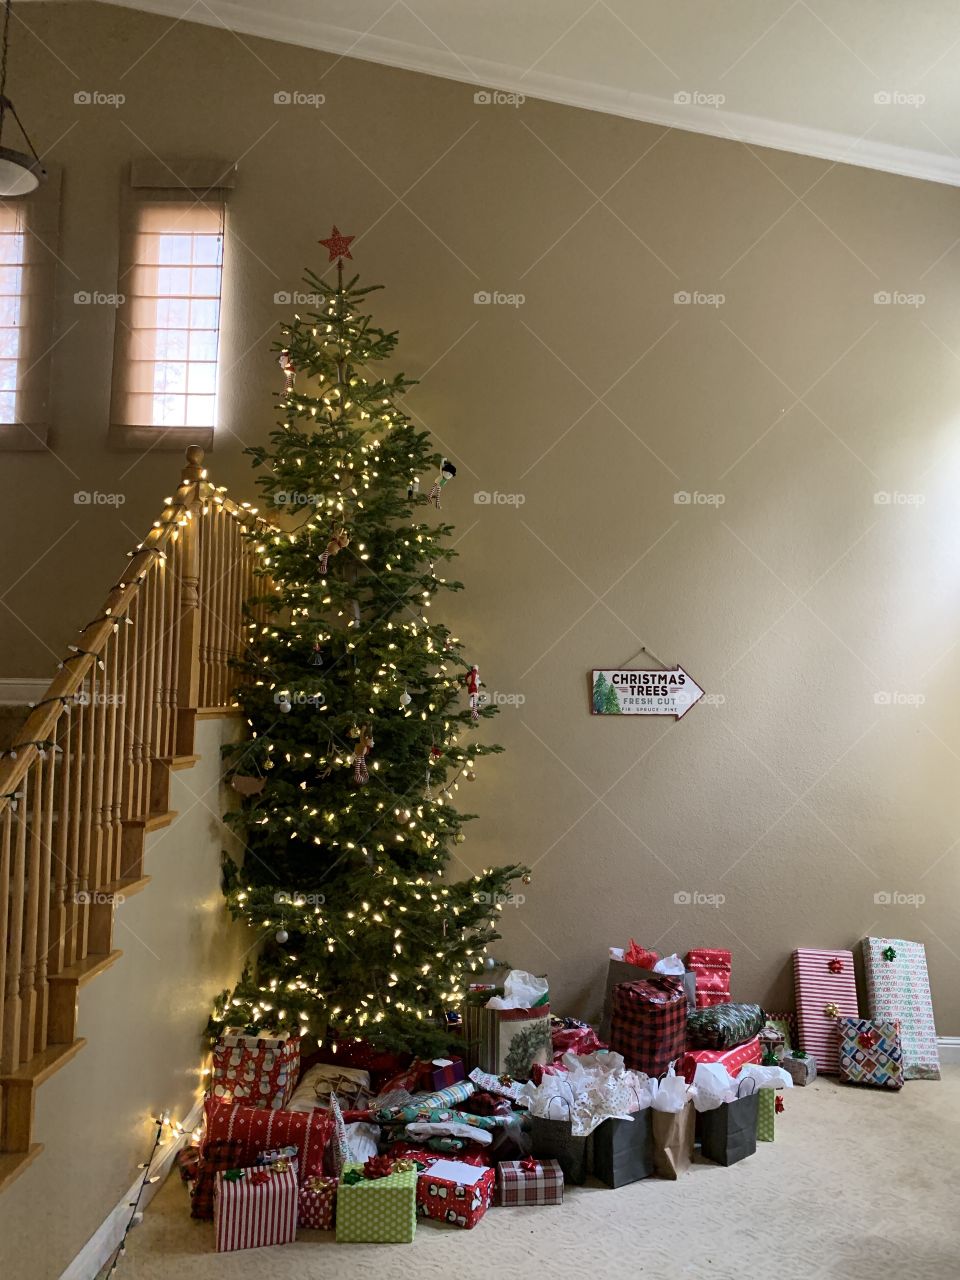 Christmas gifts surrounding the Christmas tree 